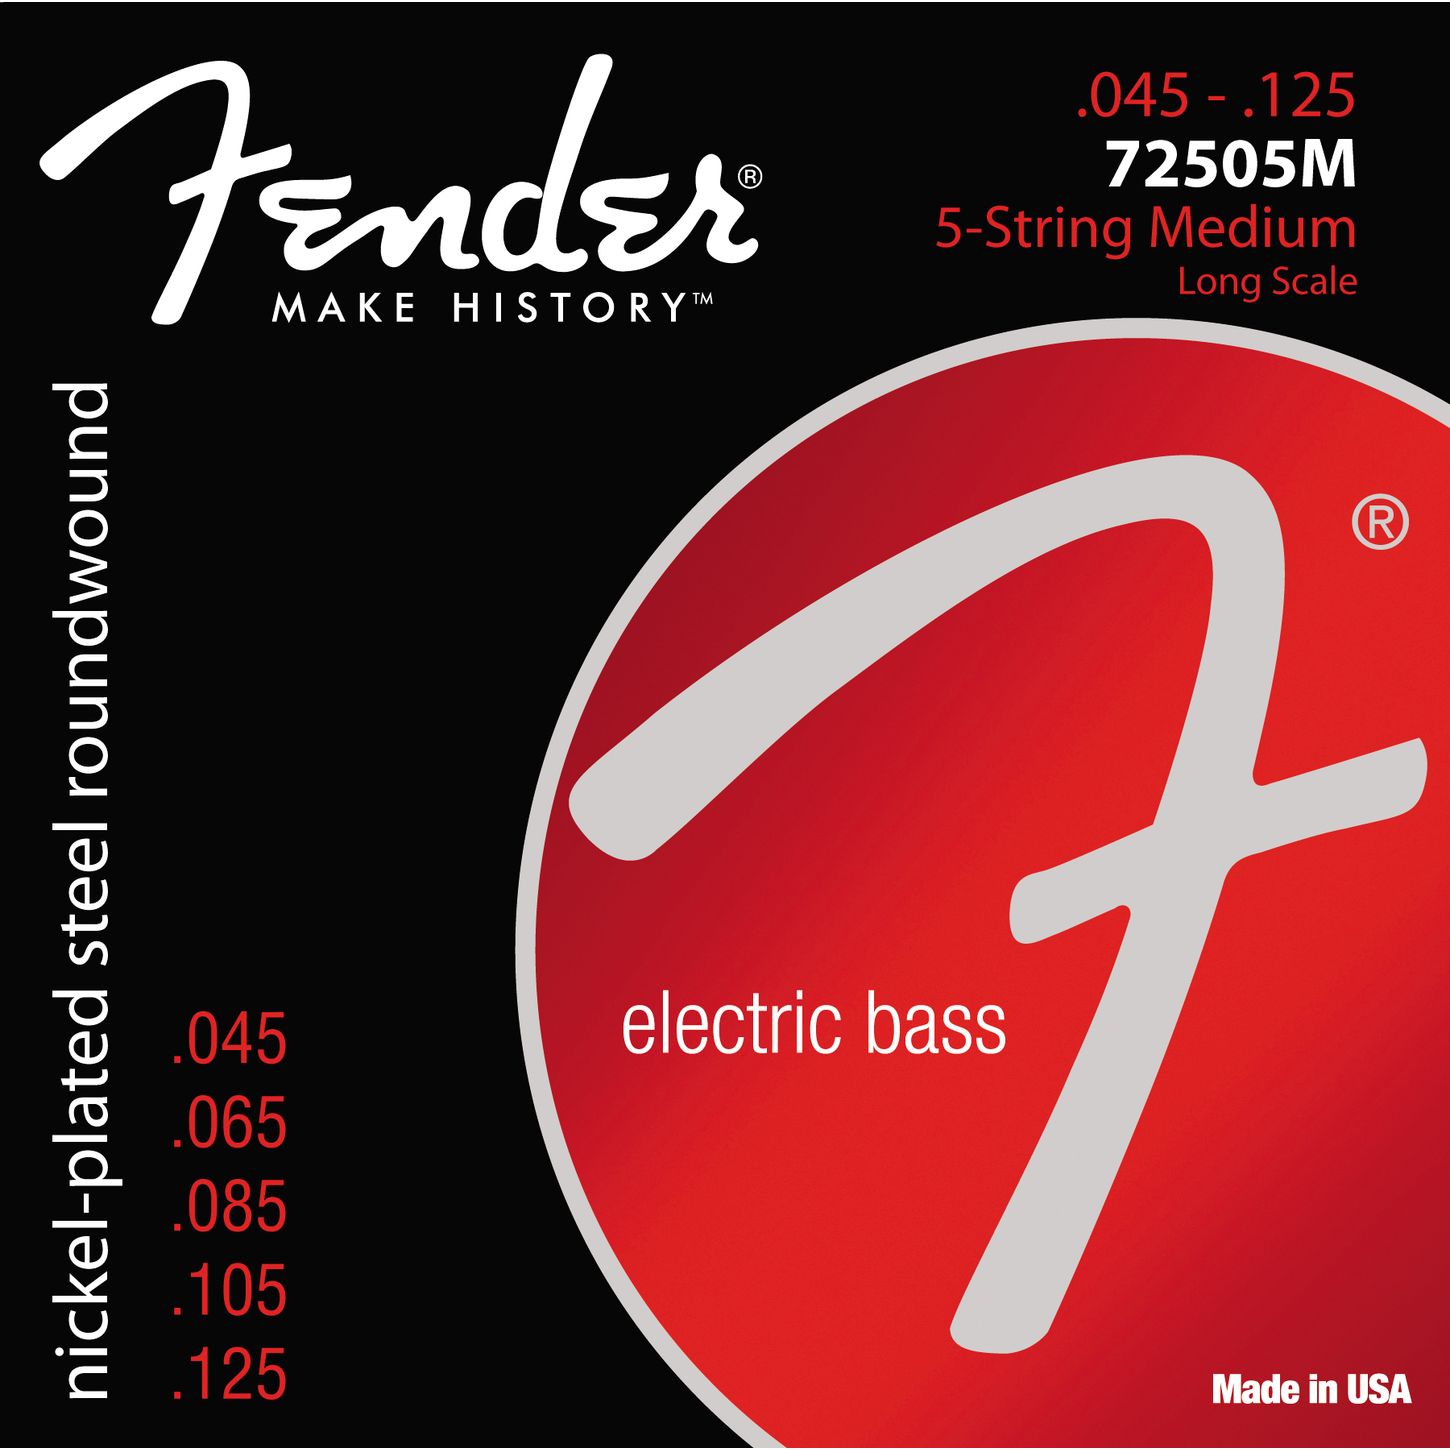 Струны для 5-струнной бас-гитары Fender 7250 5M (073-7250-456)